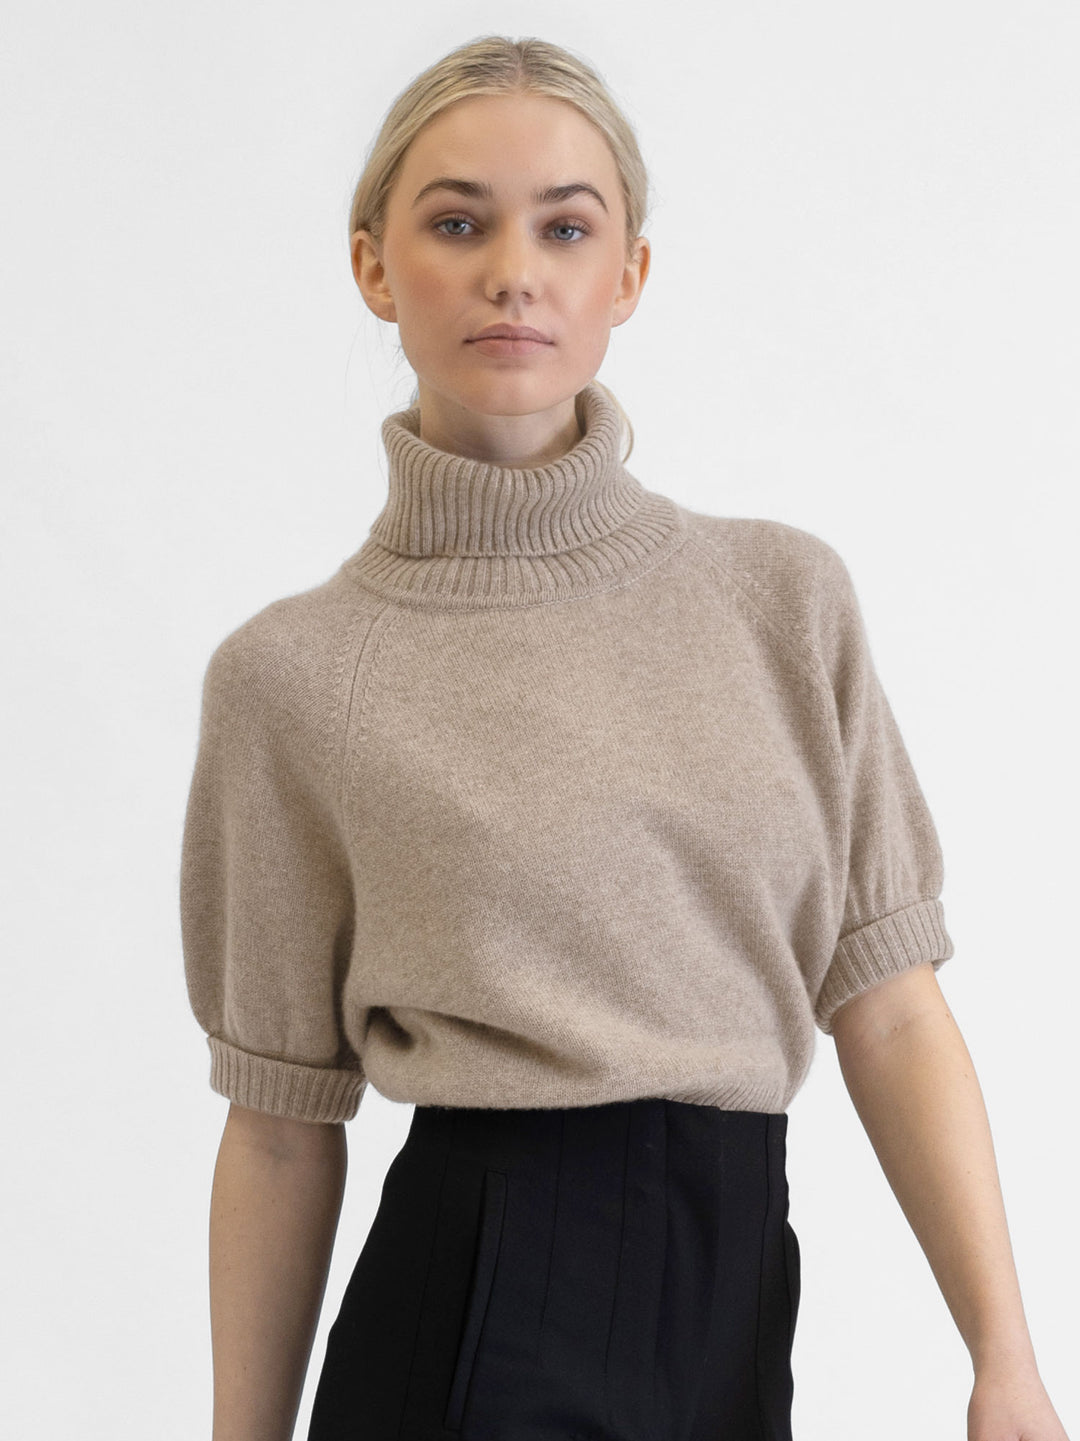 Short sleeved turtle neck cashmere sweater. Color Toast. Scandinavian design by Kashmina